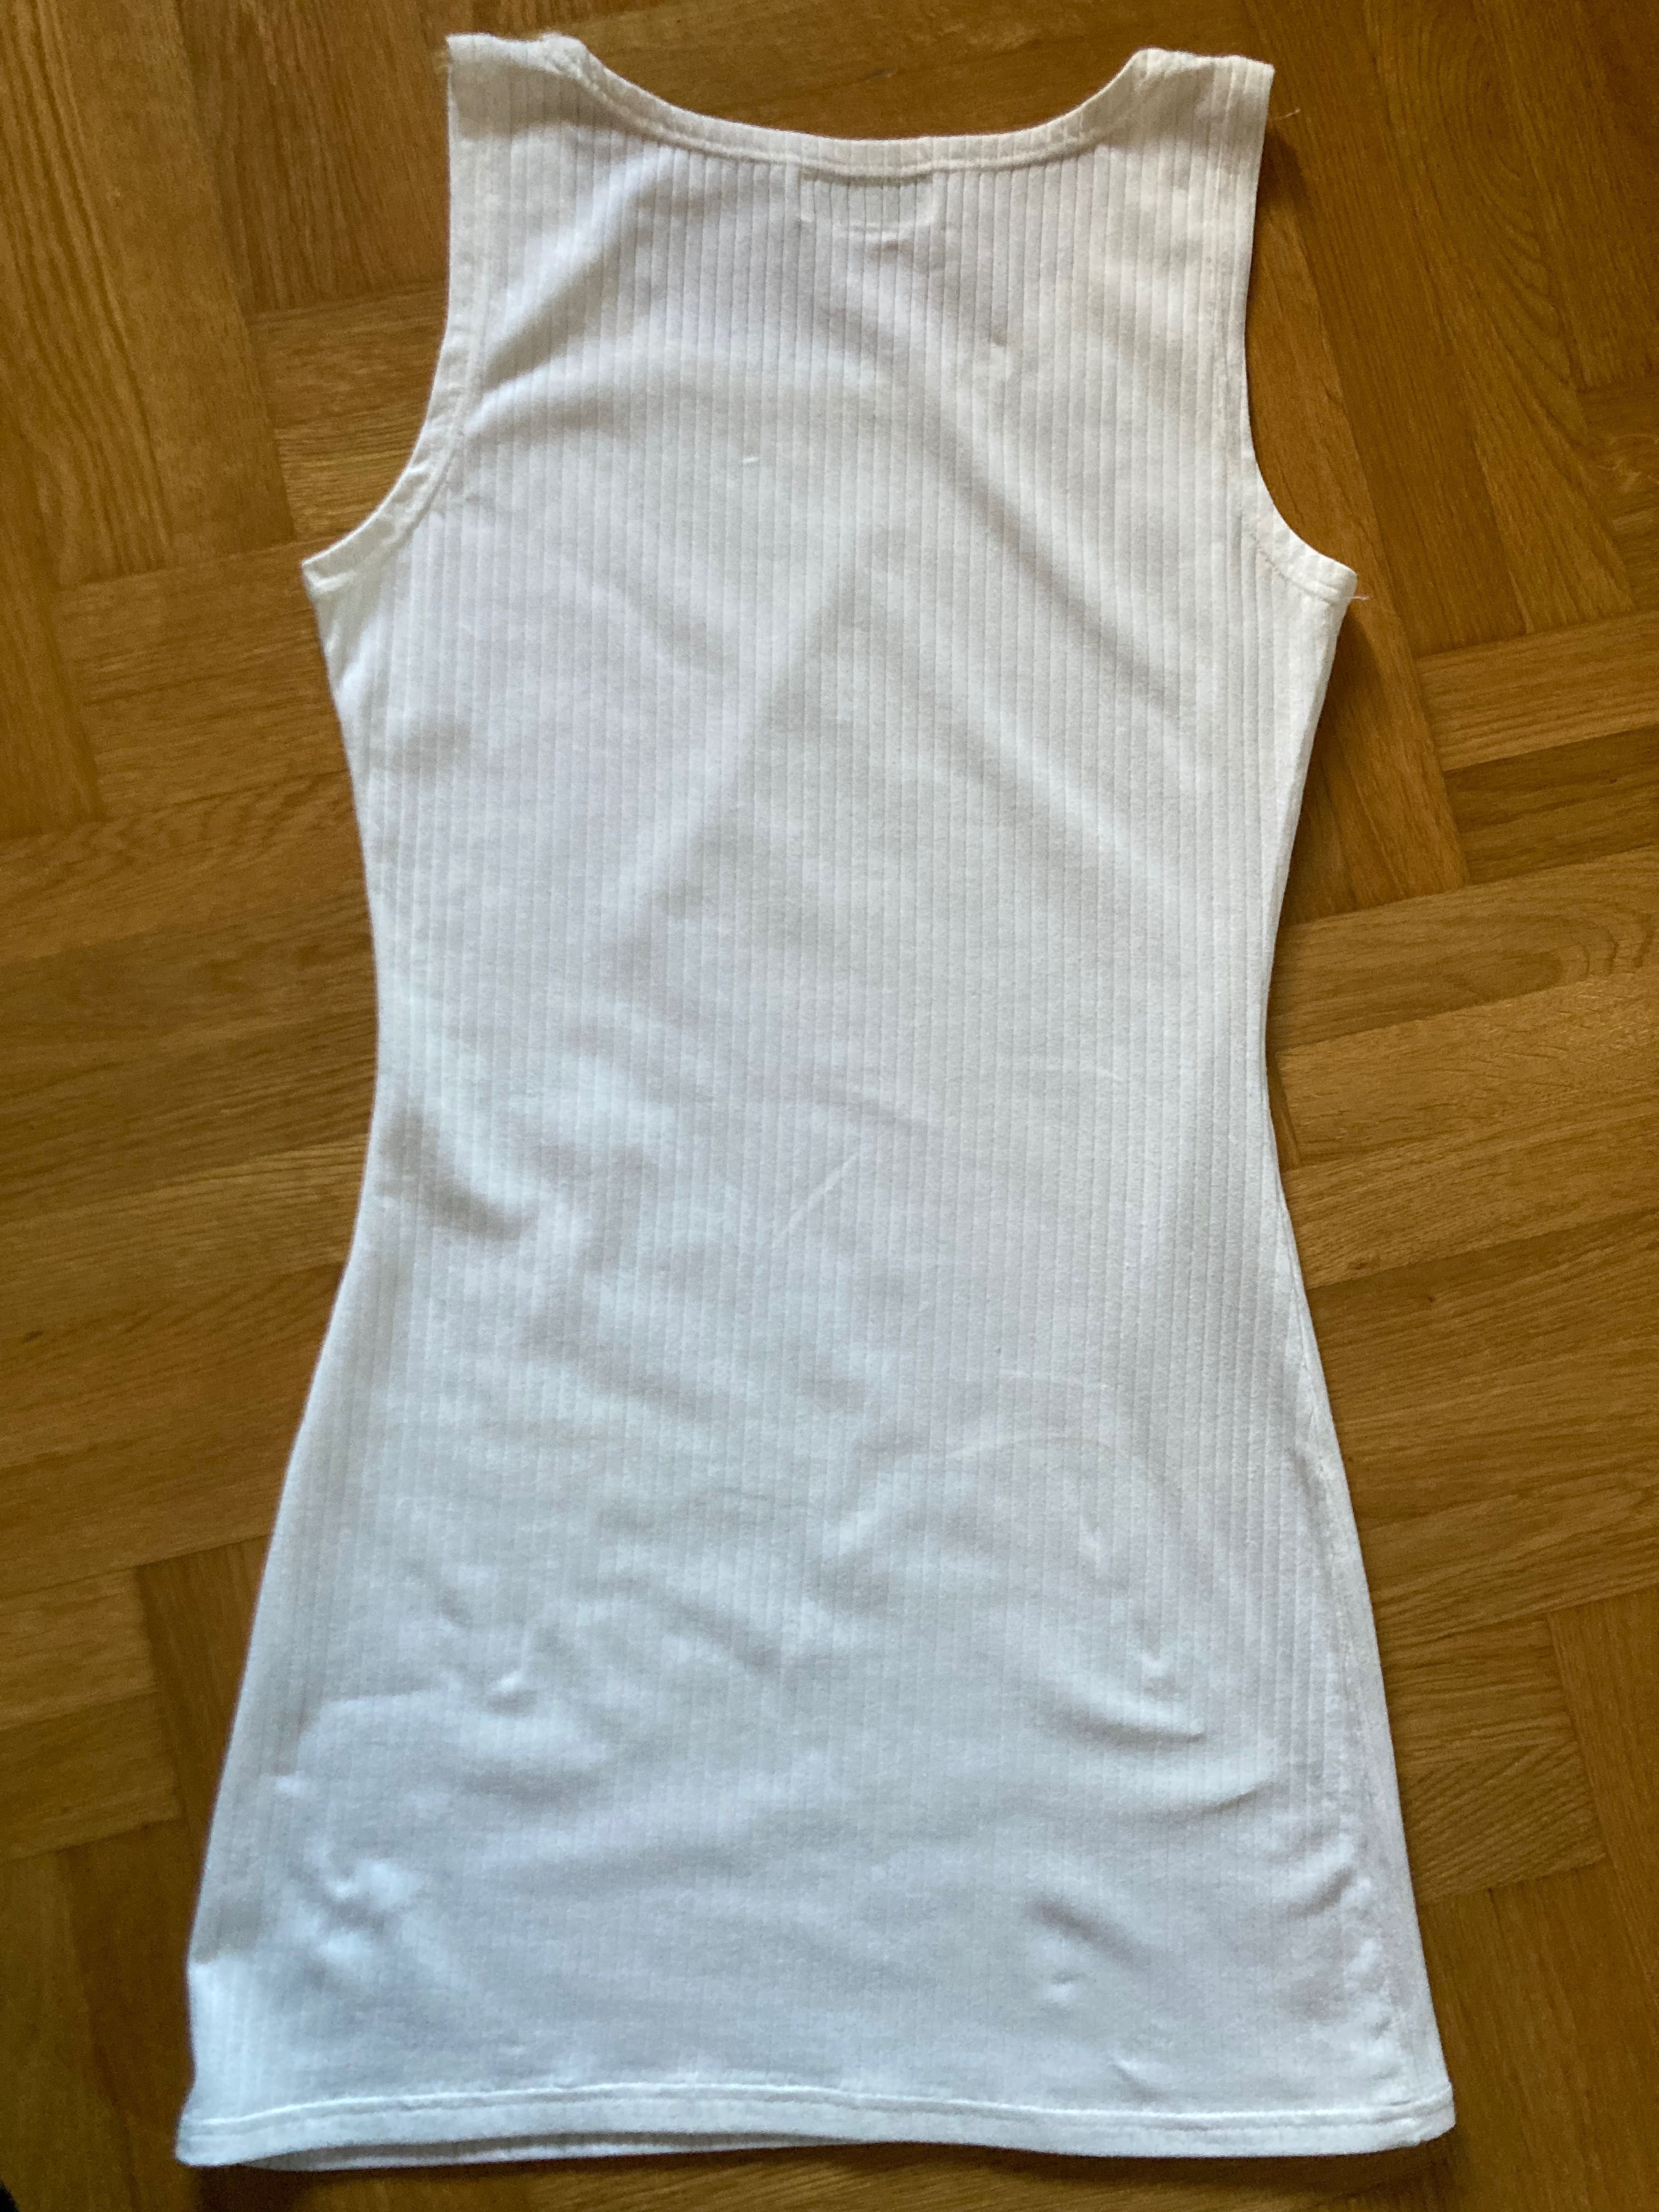 Koszulka podkoszulka na ramiączka długa do bioder biała r. S